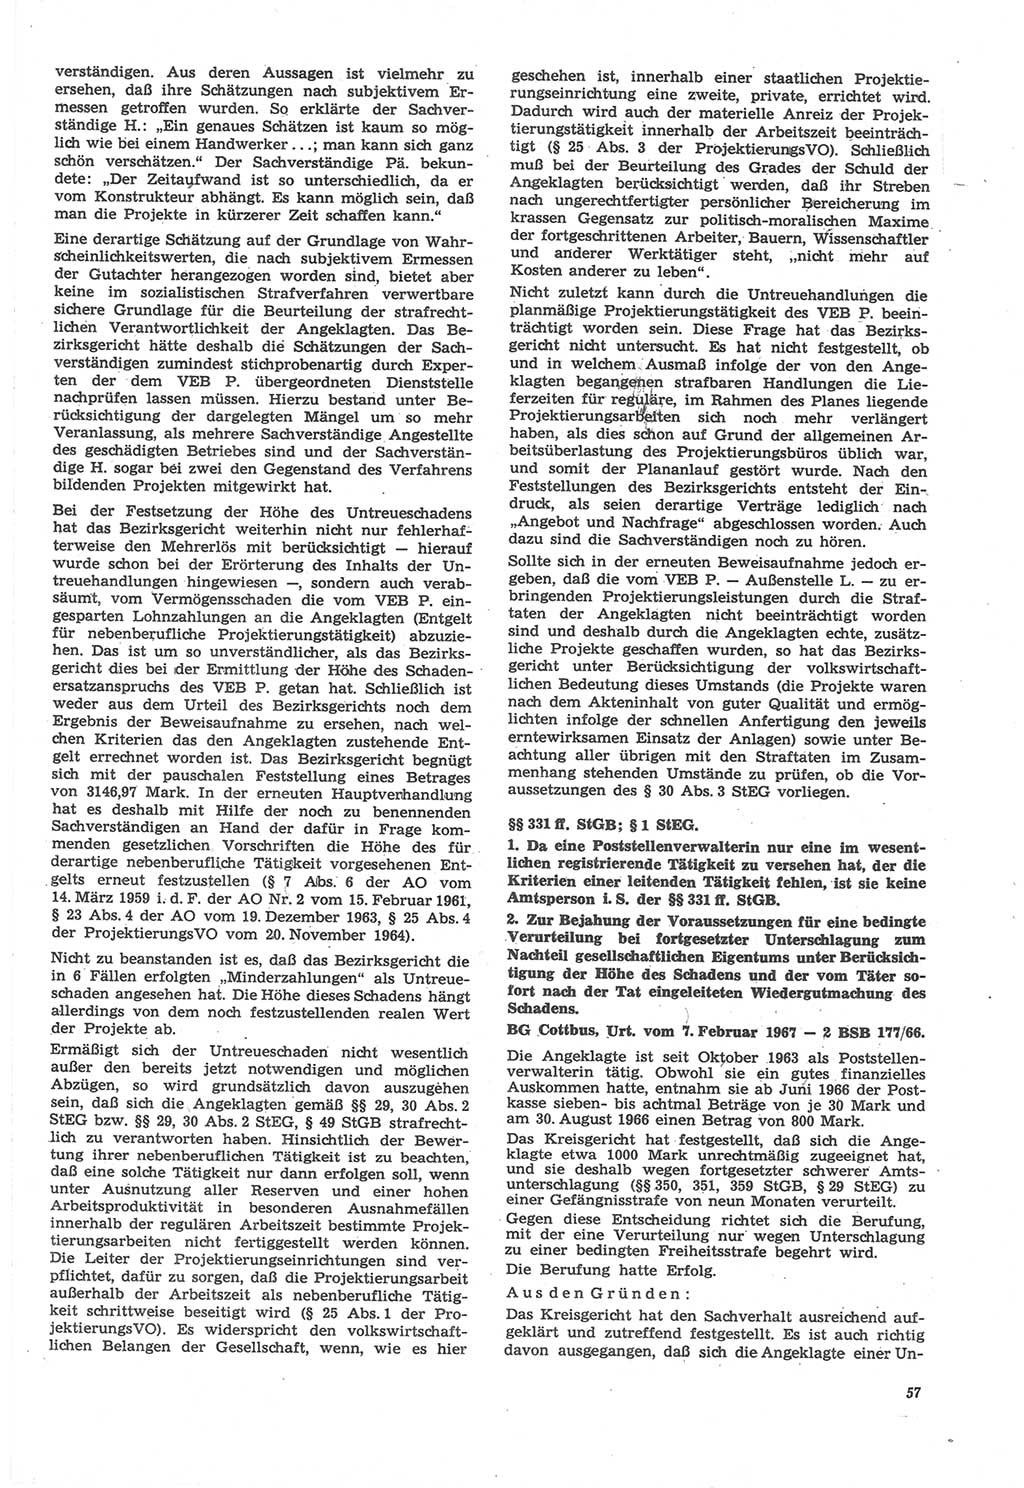 Neue Justiz (NJ), Zeitschrift für Recht und Rechtswissenschaft [Deutsche Demokratische Republik (DDR)], 22. Jahrgang 1968, Seite 57 (NJ DDR 1968, S. 57)